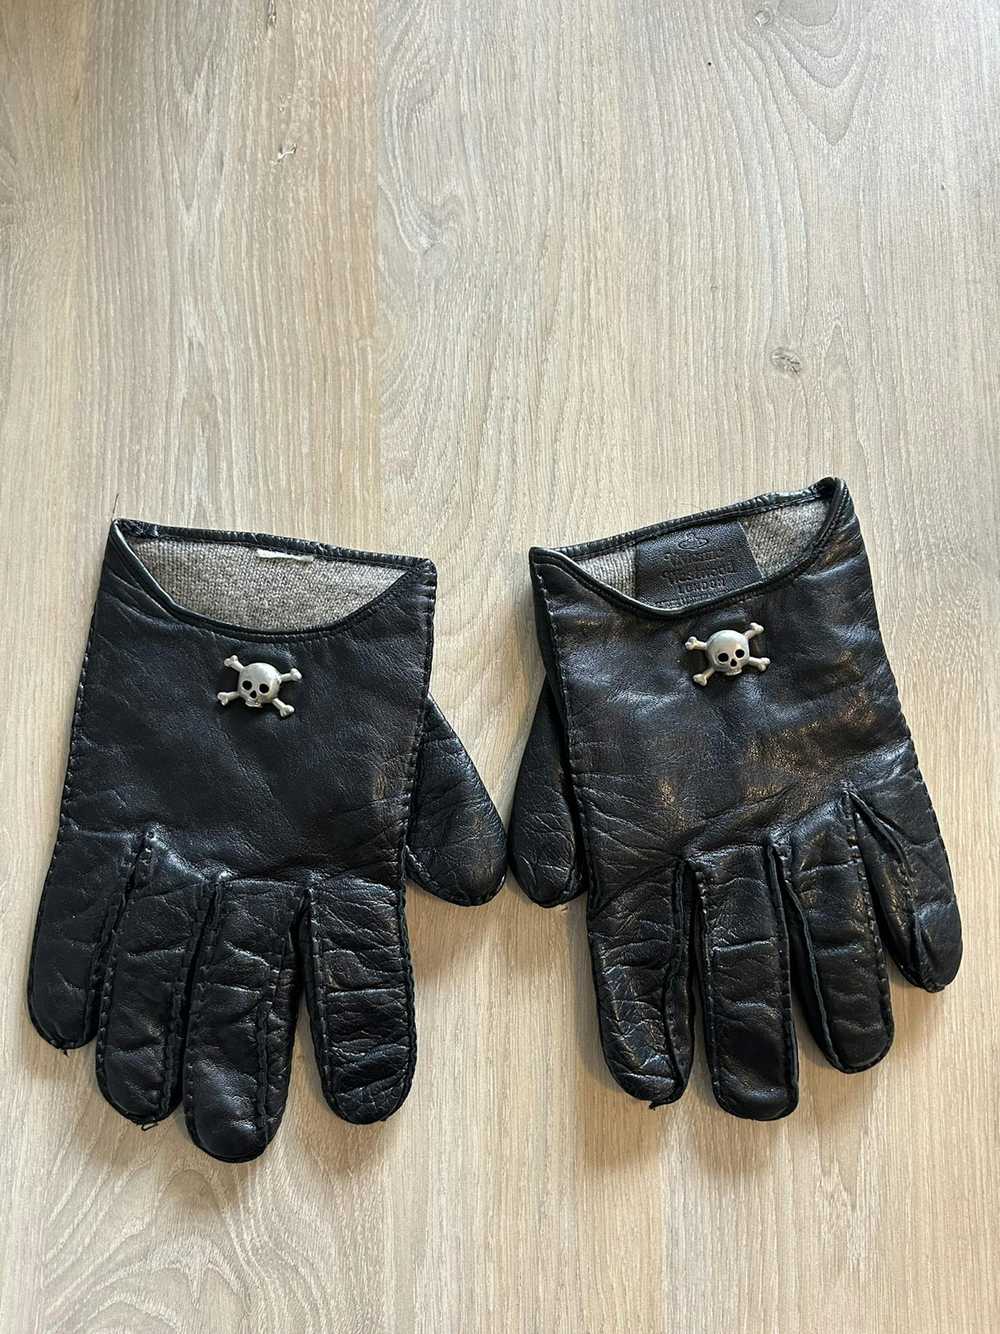 Vivienne Westwood Leather Skull Gloves - image 1